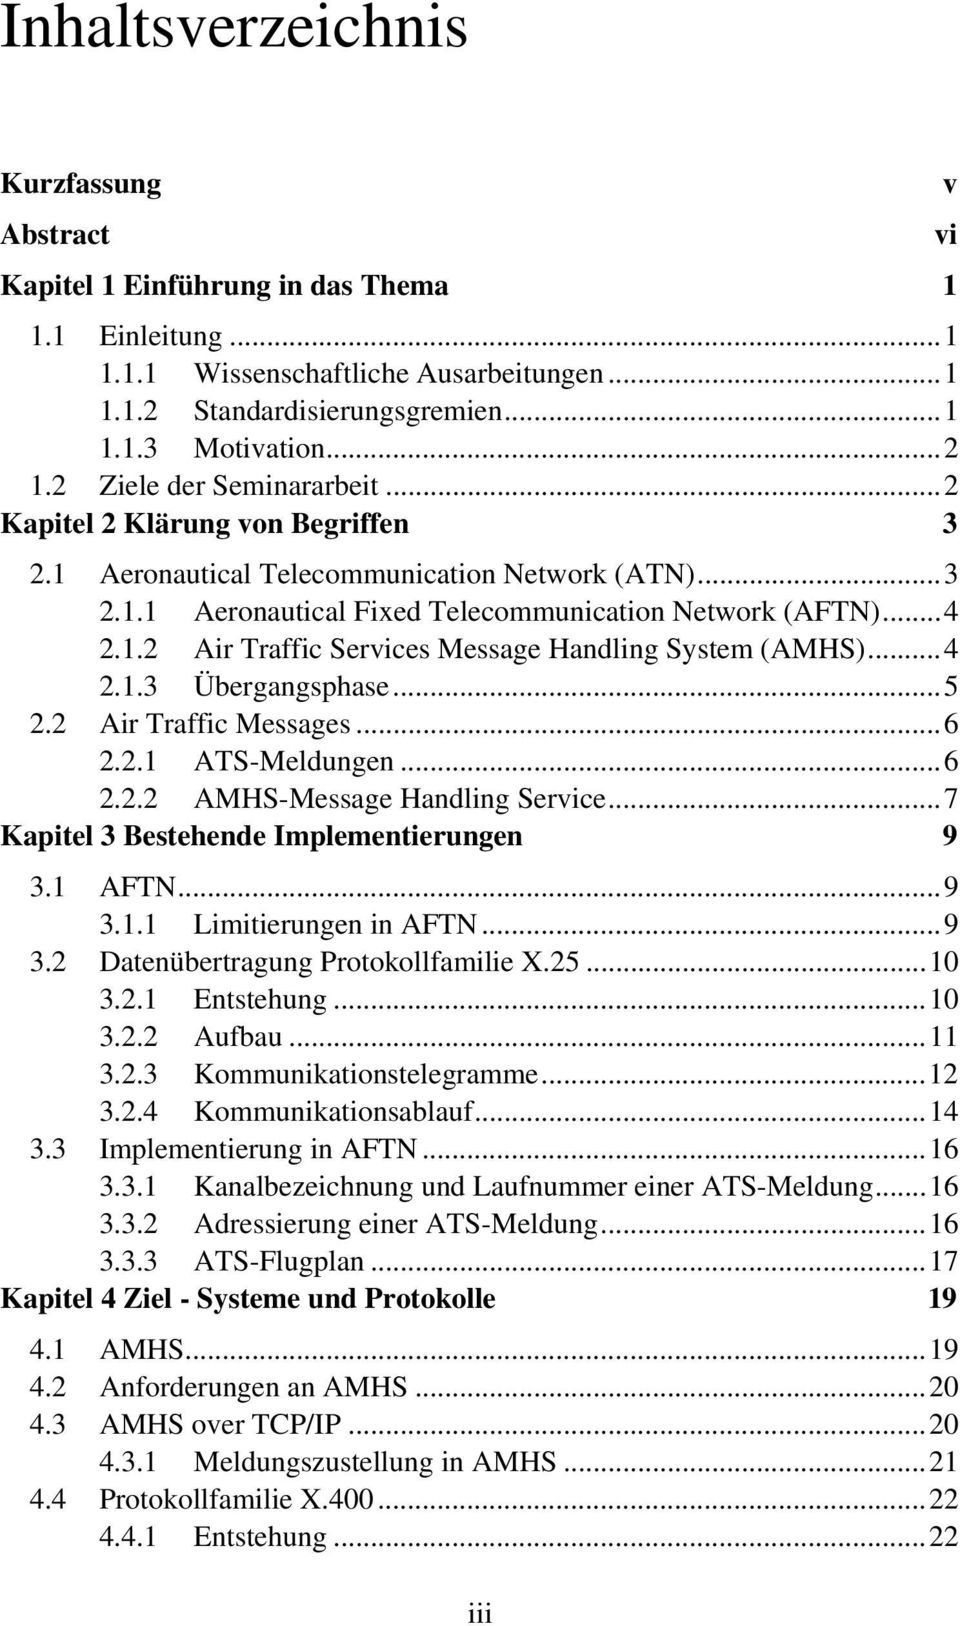 ..4 2.1.3 Übergangsphase...5 2.2 Air Traffic Messages...6 2.2.1 ATS-Meldungen...6 2.2.2 AMHS-Message Handling Service...7 Kapitel 3 Bestehende Implementierungen 9 3.1 AFTN...9 3.1.1 Limitierungen in AFTN.